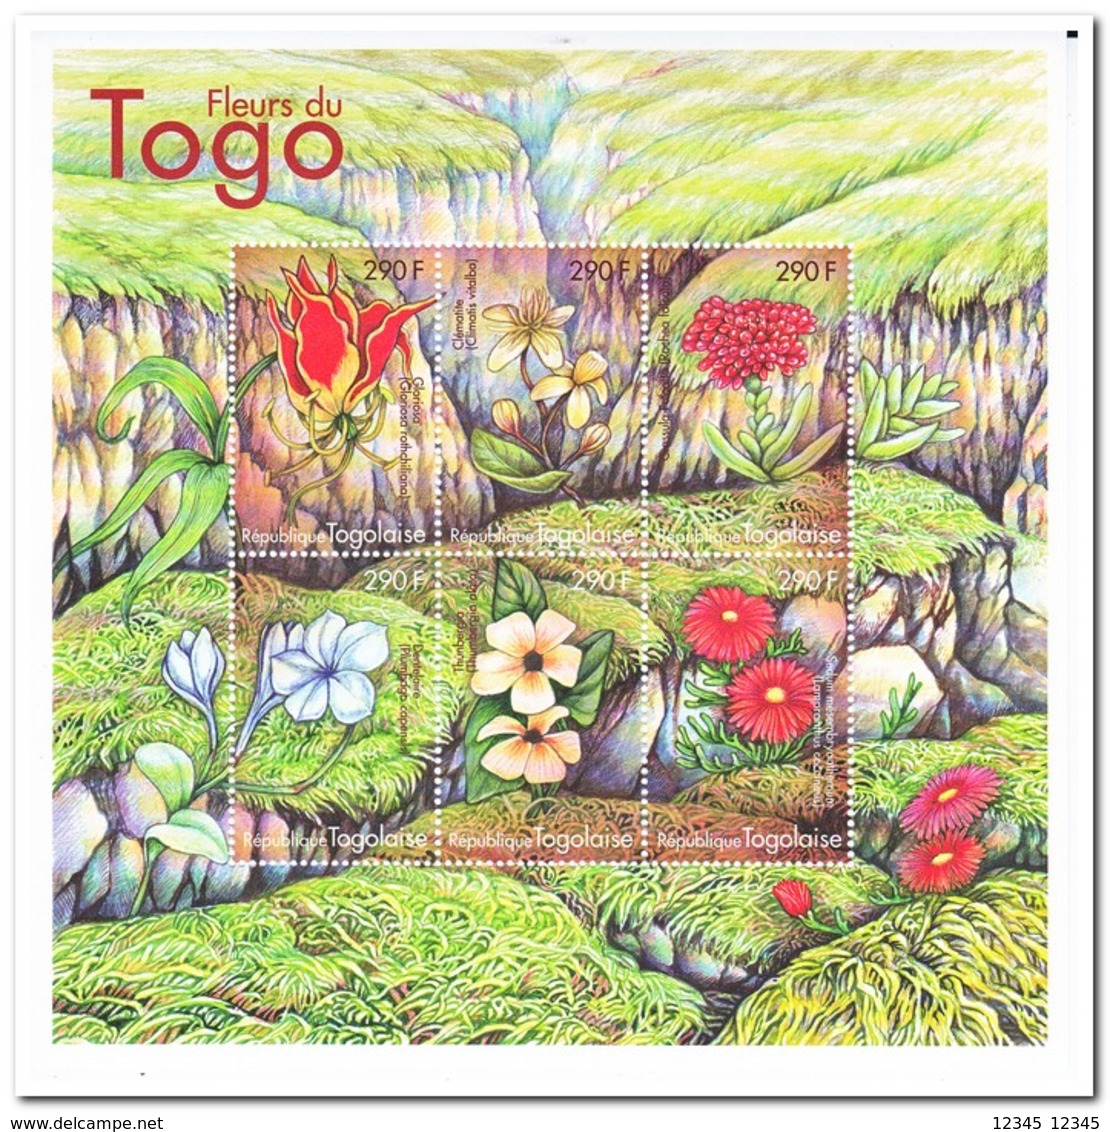 Togo 2000, Postfris MNH, Flowers - Togo (1960-...)